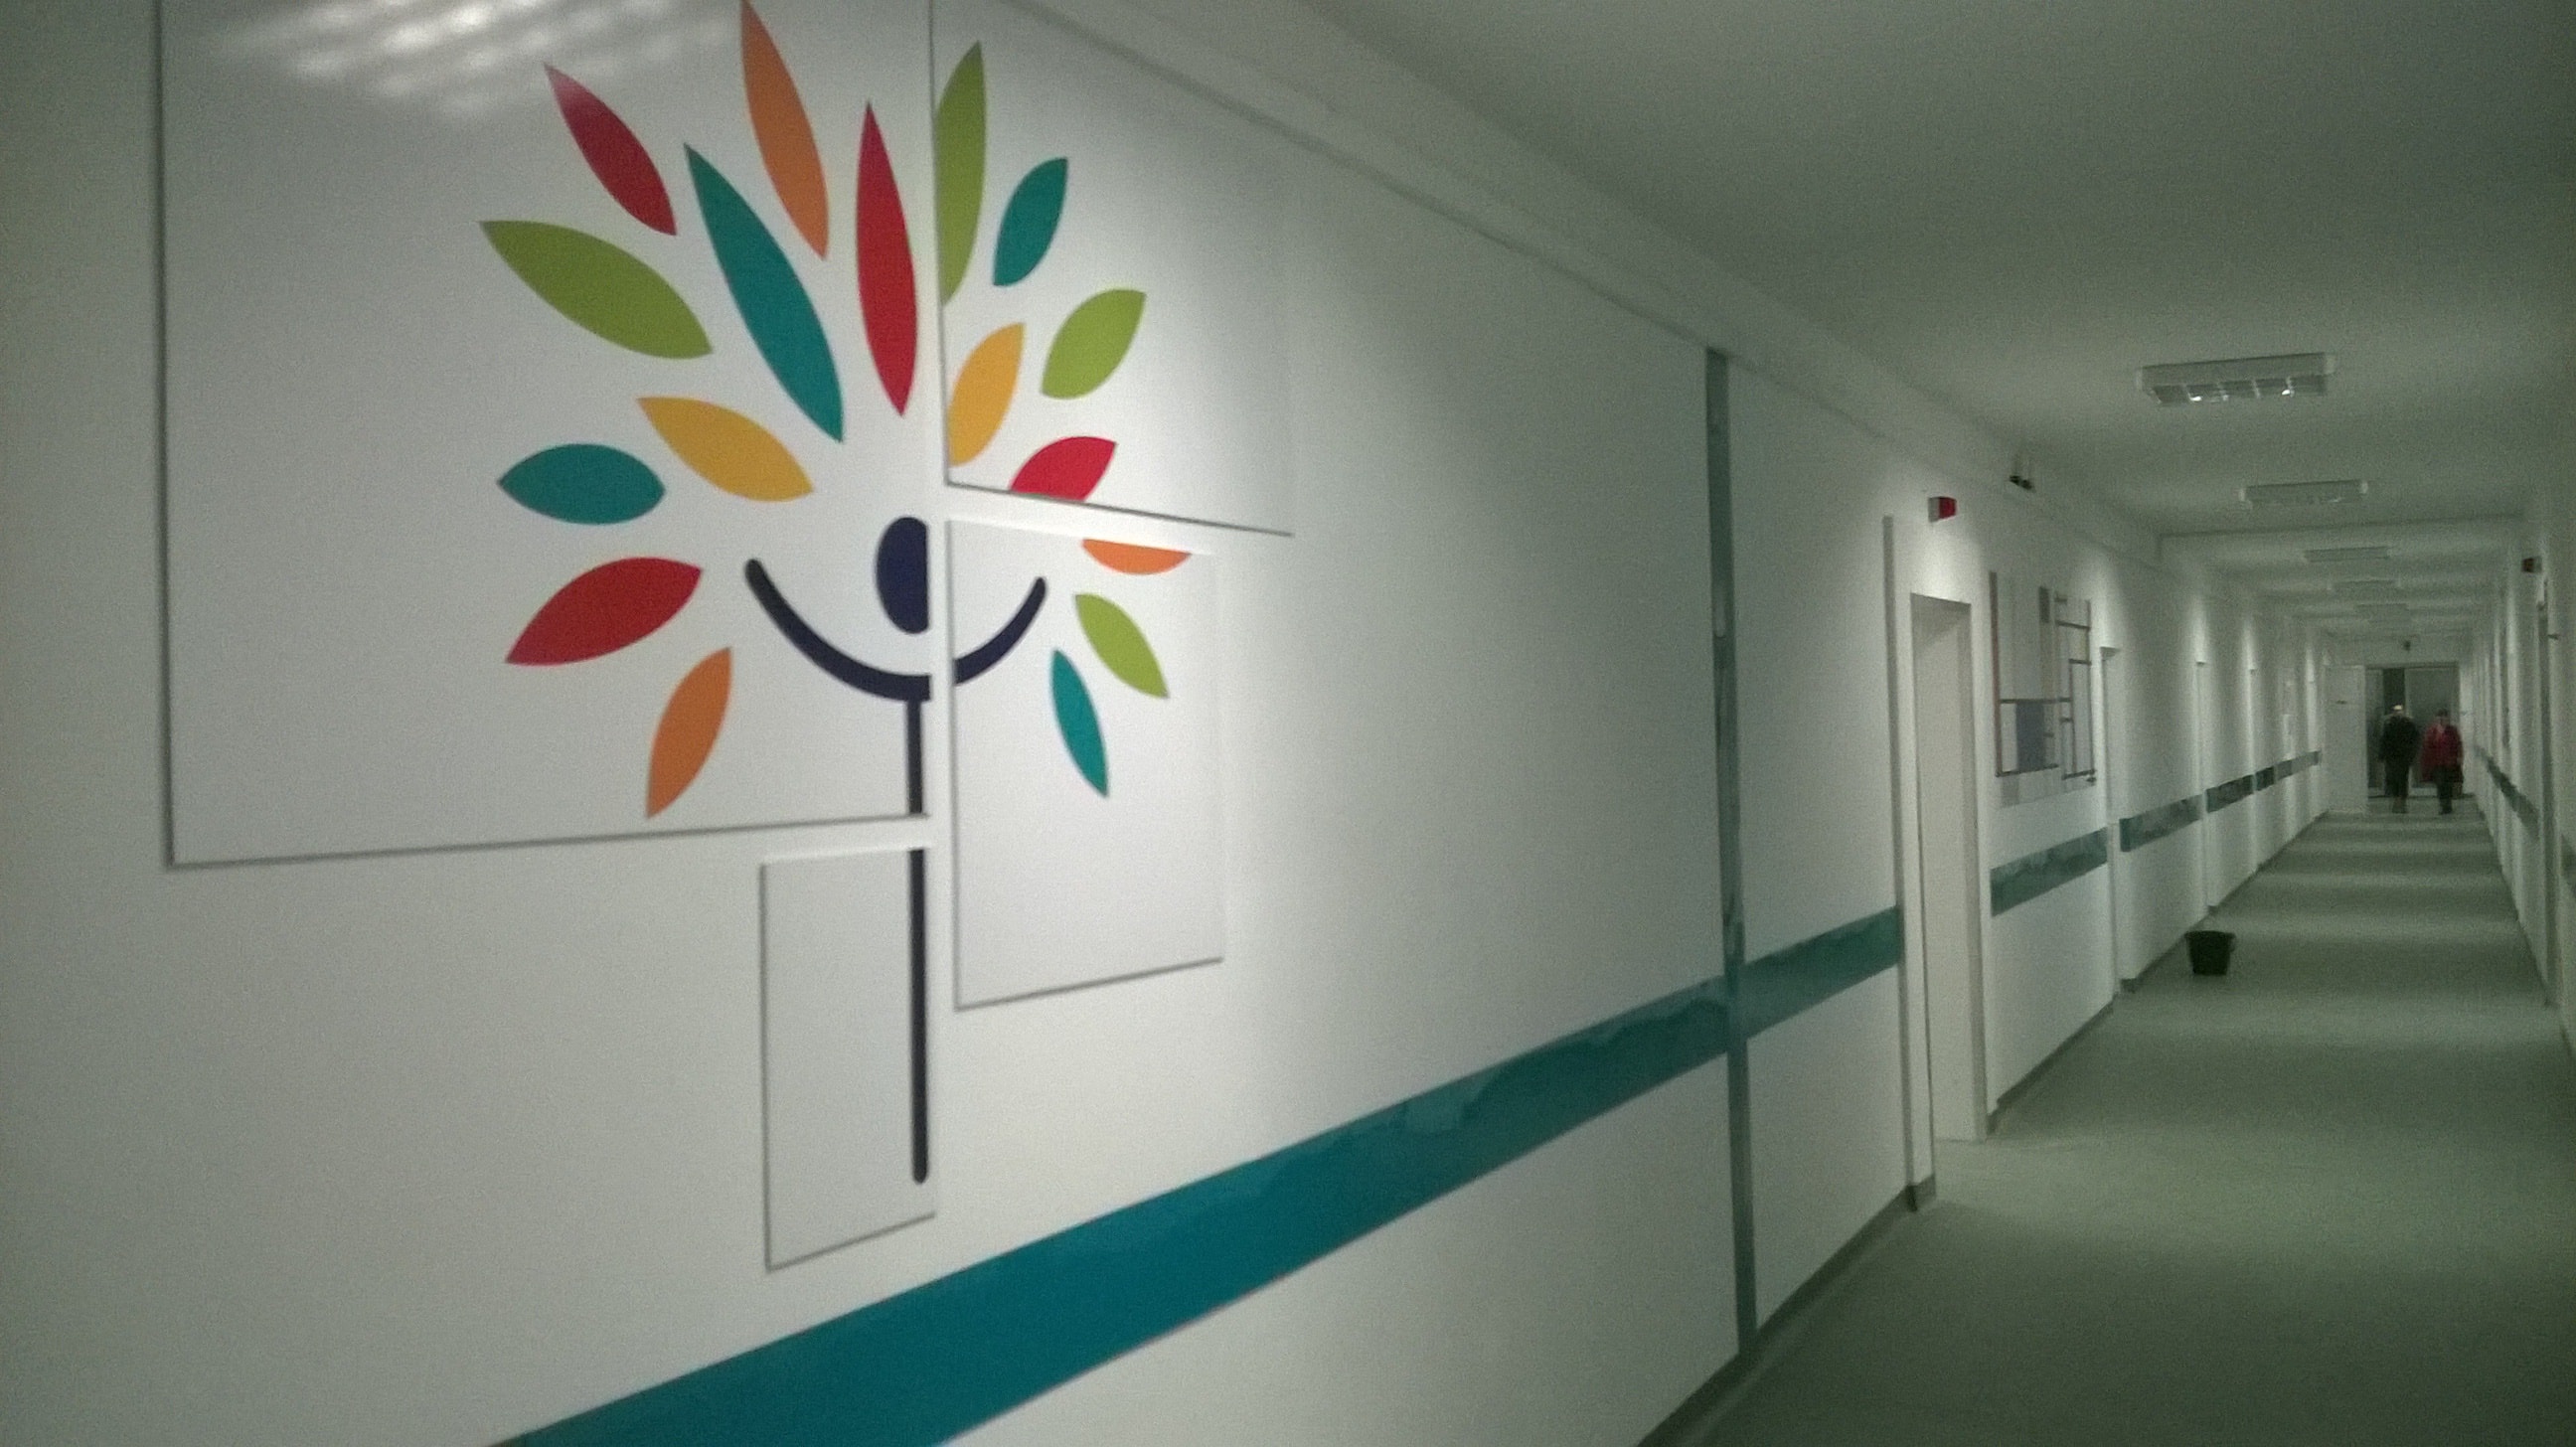 Decor interior UPU - Spitalul Judetean de Urgenta Slatina. Panouri din PVC inscriptionate cu autocolant printat